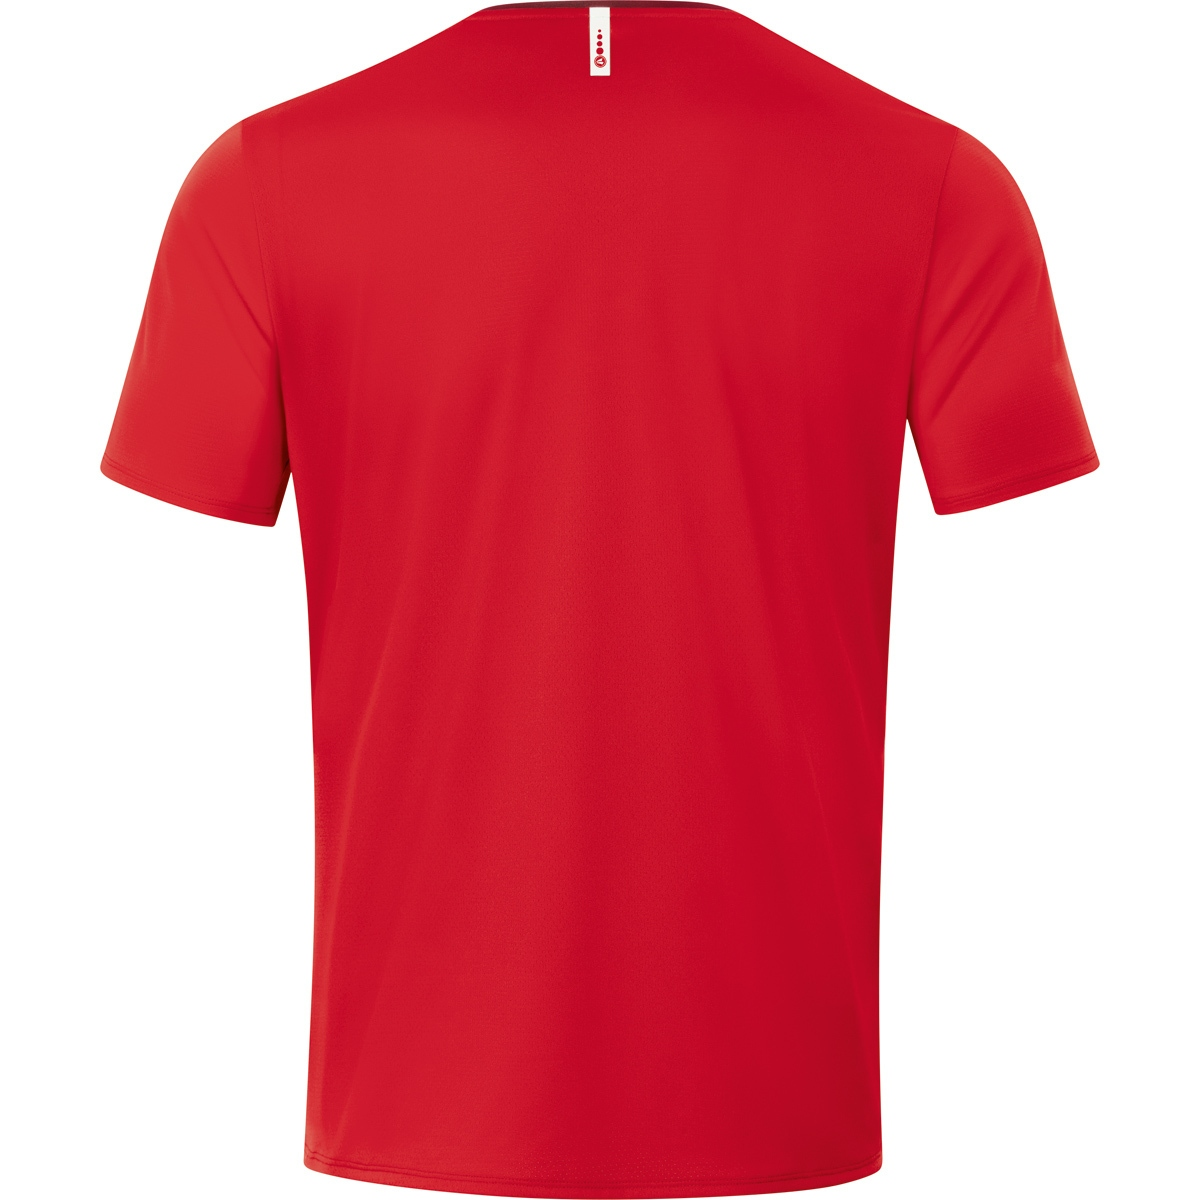 Champ XL, Herren, T-Shirt 2.0 JAKO Gr. 6120 rot/weinrot,